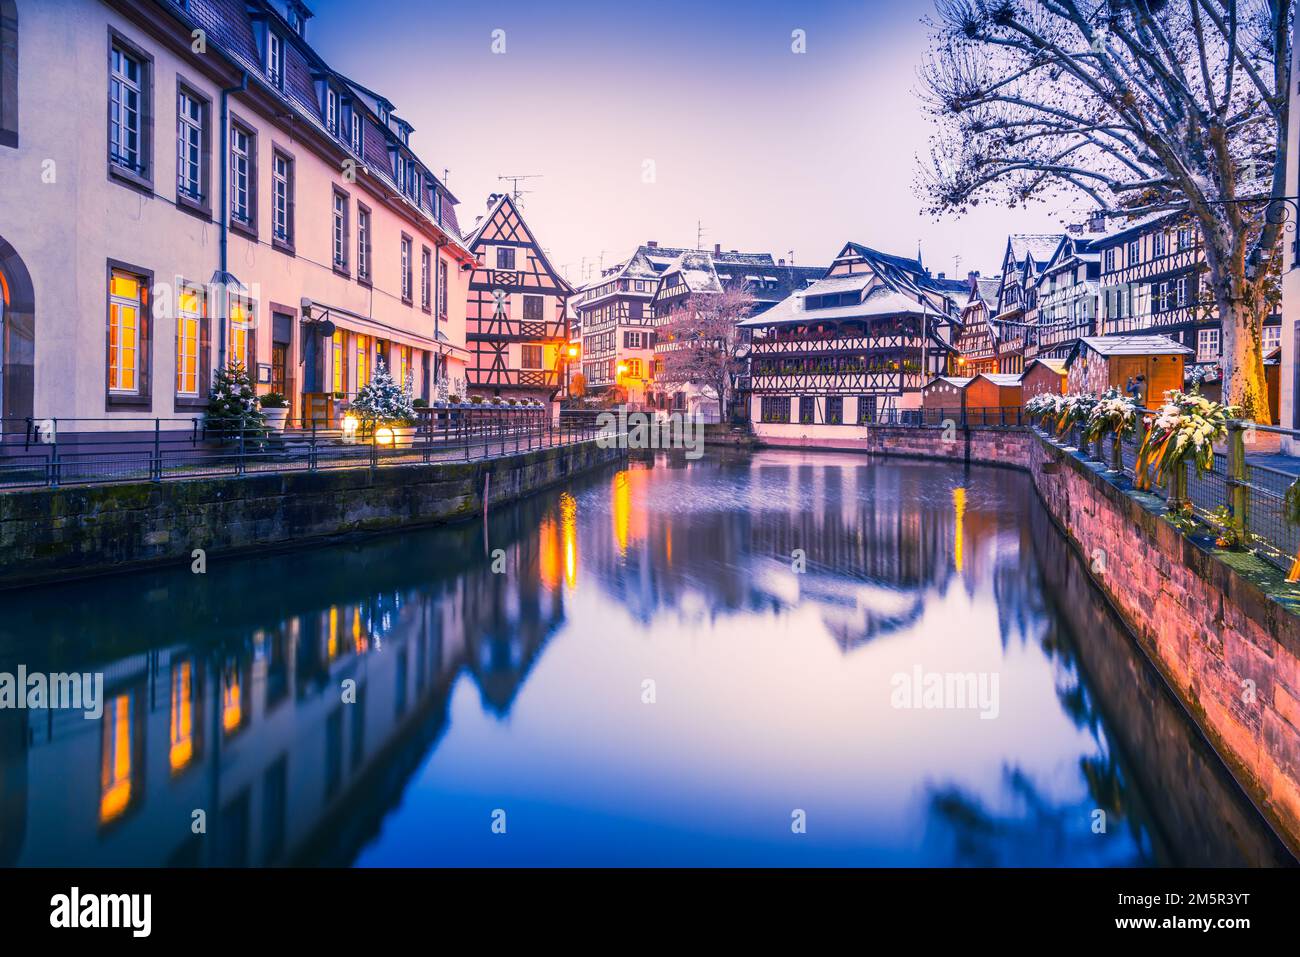 Straßburg, Frankreich. Traditionelle elsässische Stadt mit Fachwerkhäusern, Wasserreflexionen in Petite France während der Dämmerung. Weihnachtsdekoration im Winter Stockfoto